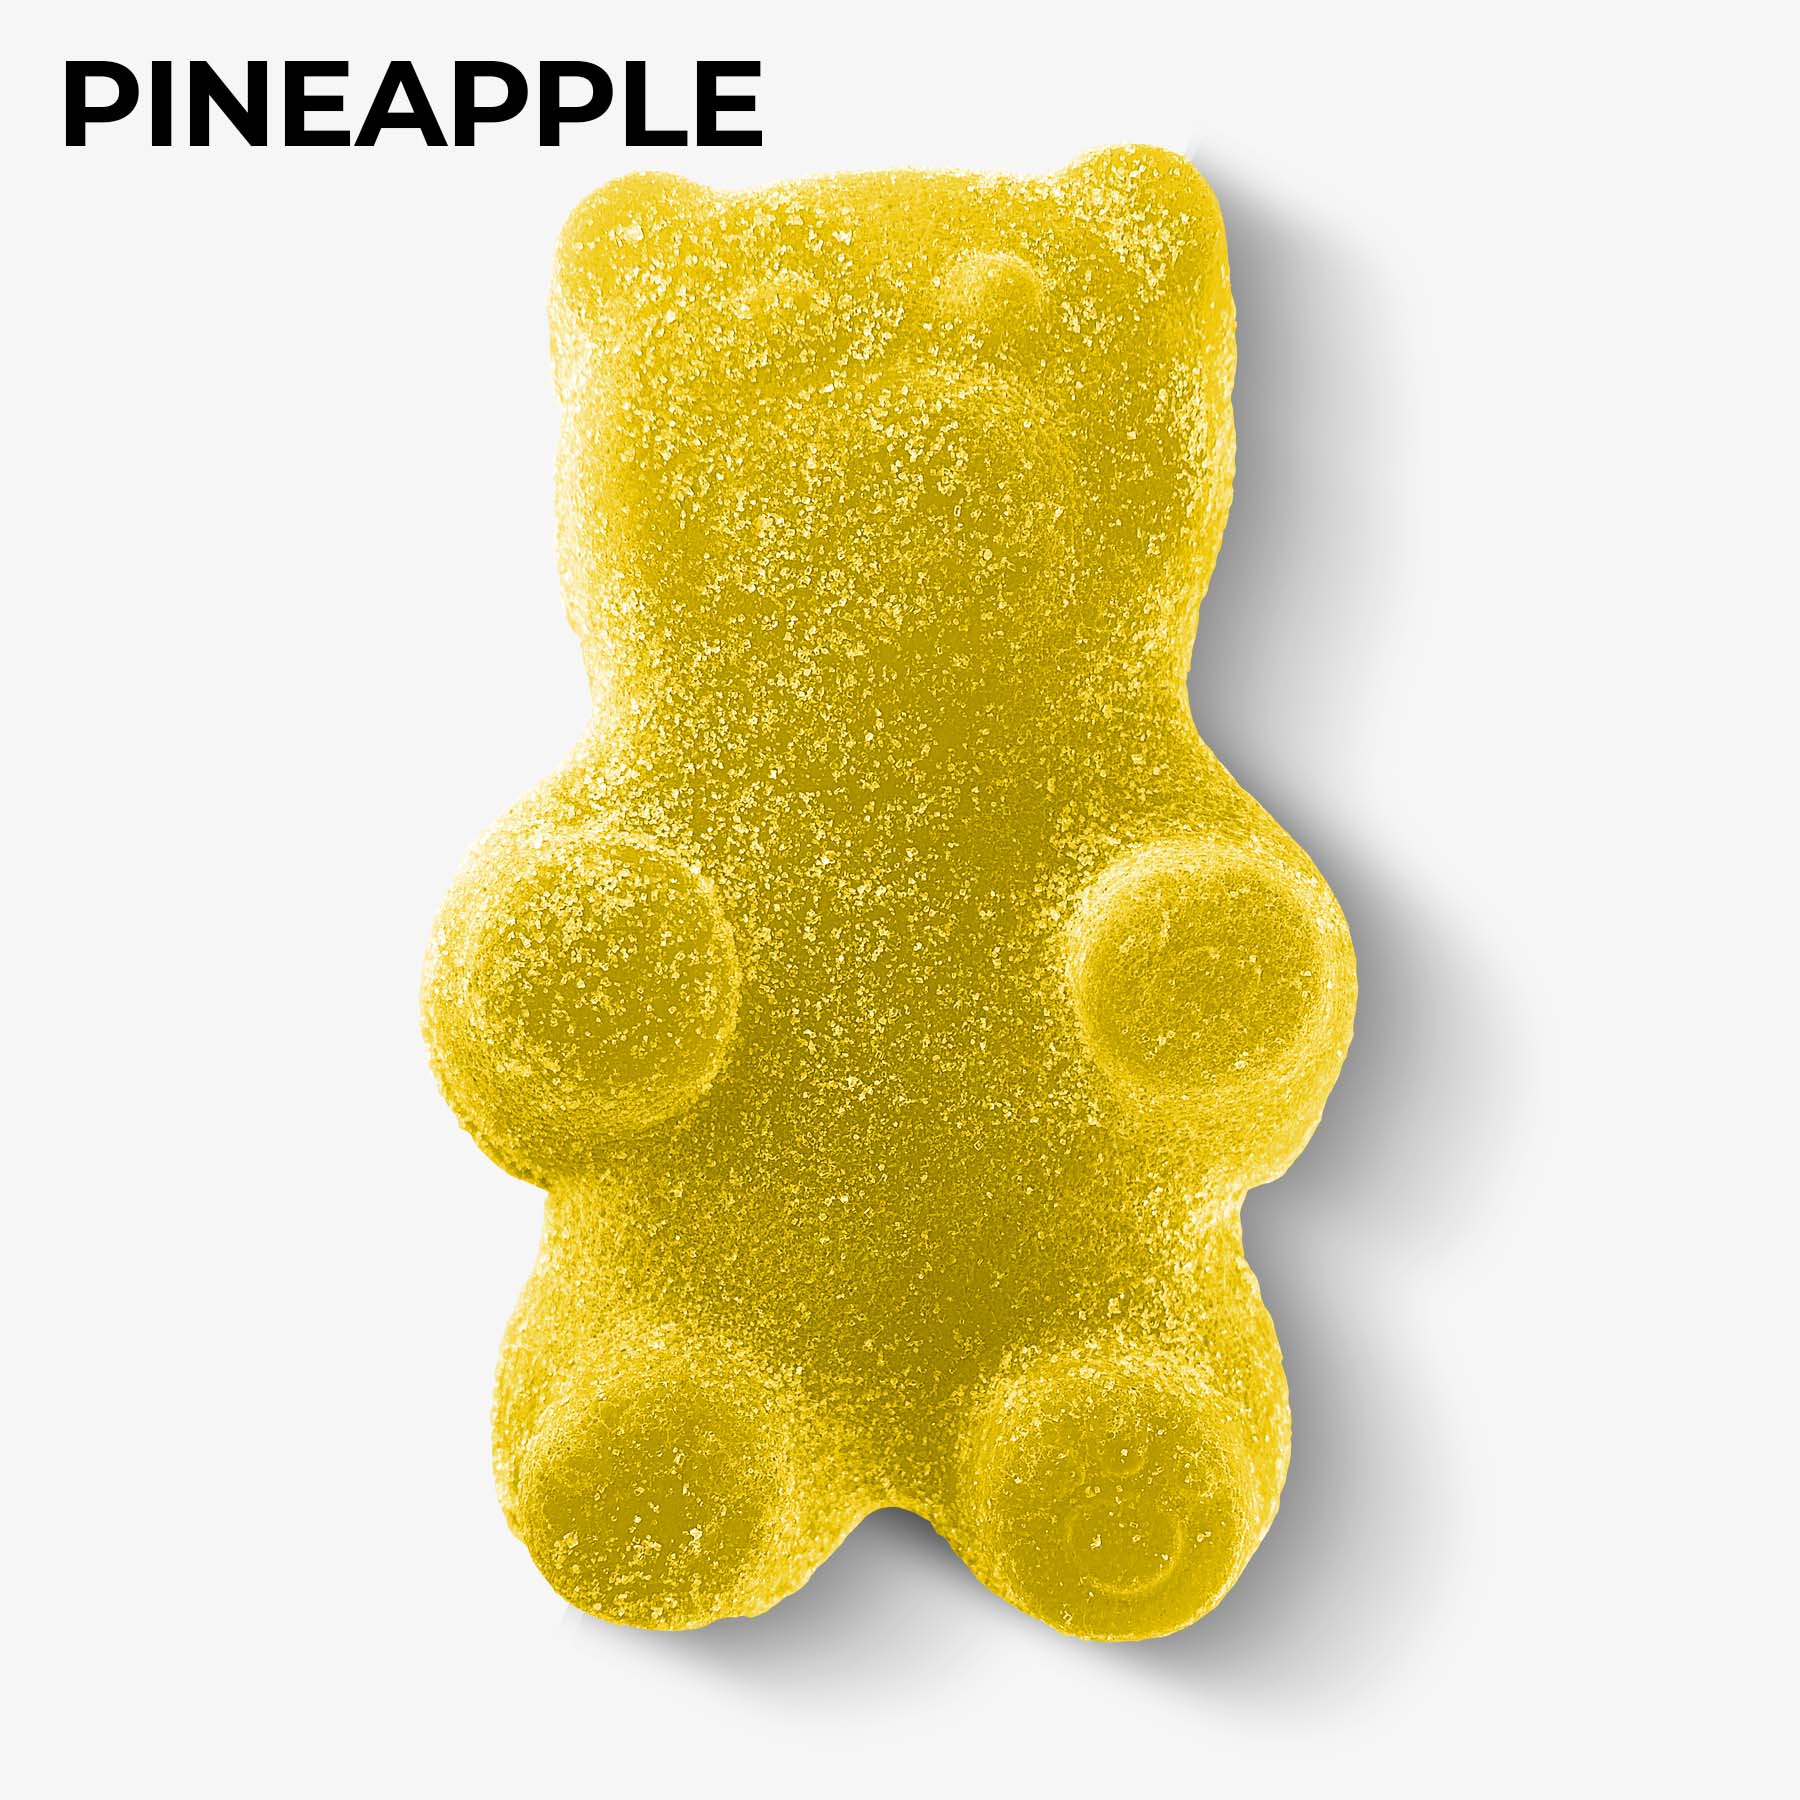 revenge giant gummy bear pineapple